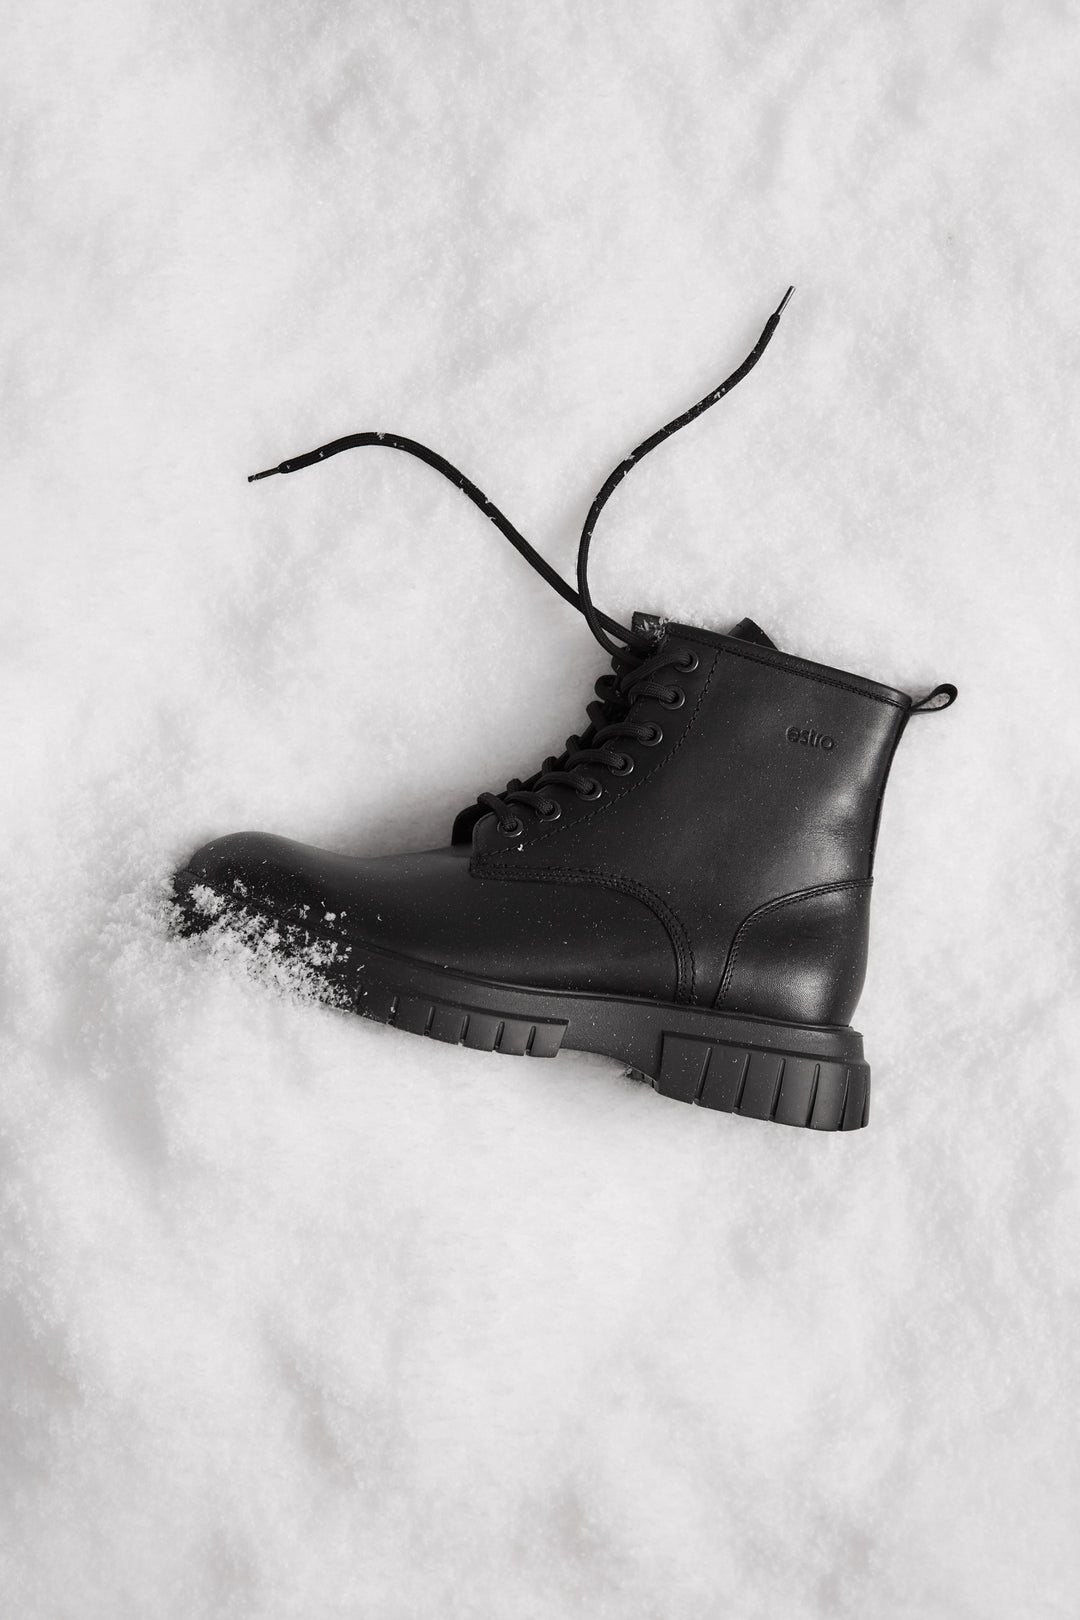 Men's black leather Estro winter ankle boots.